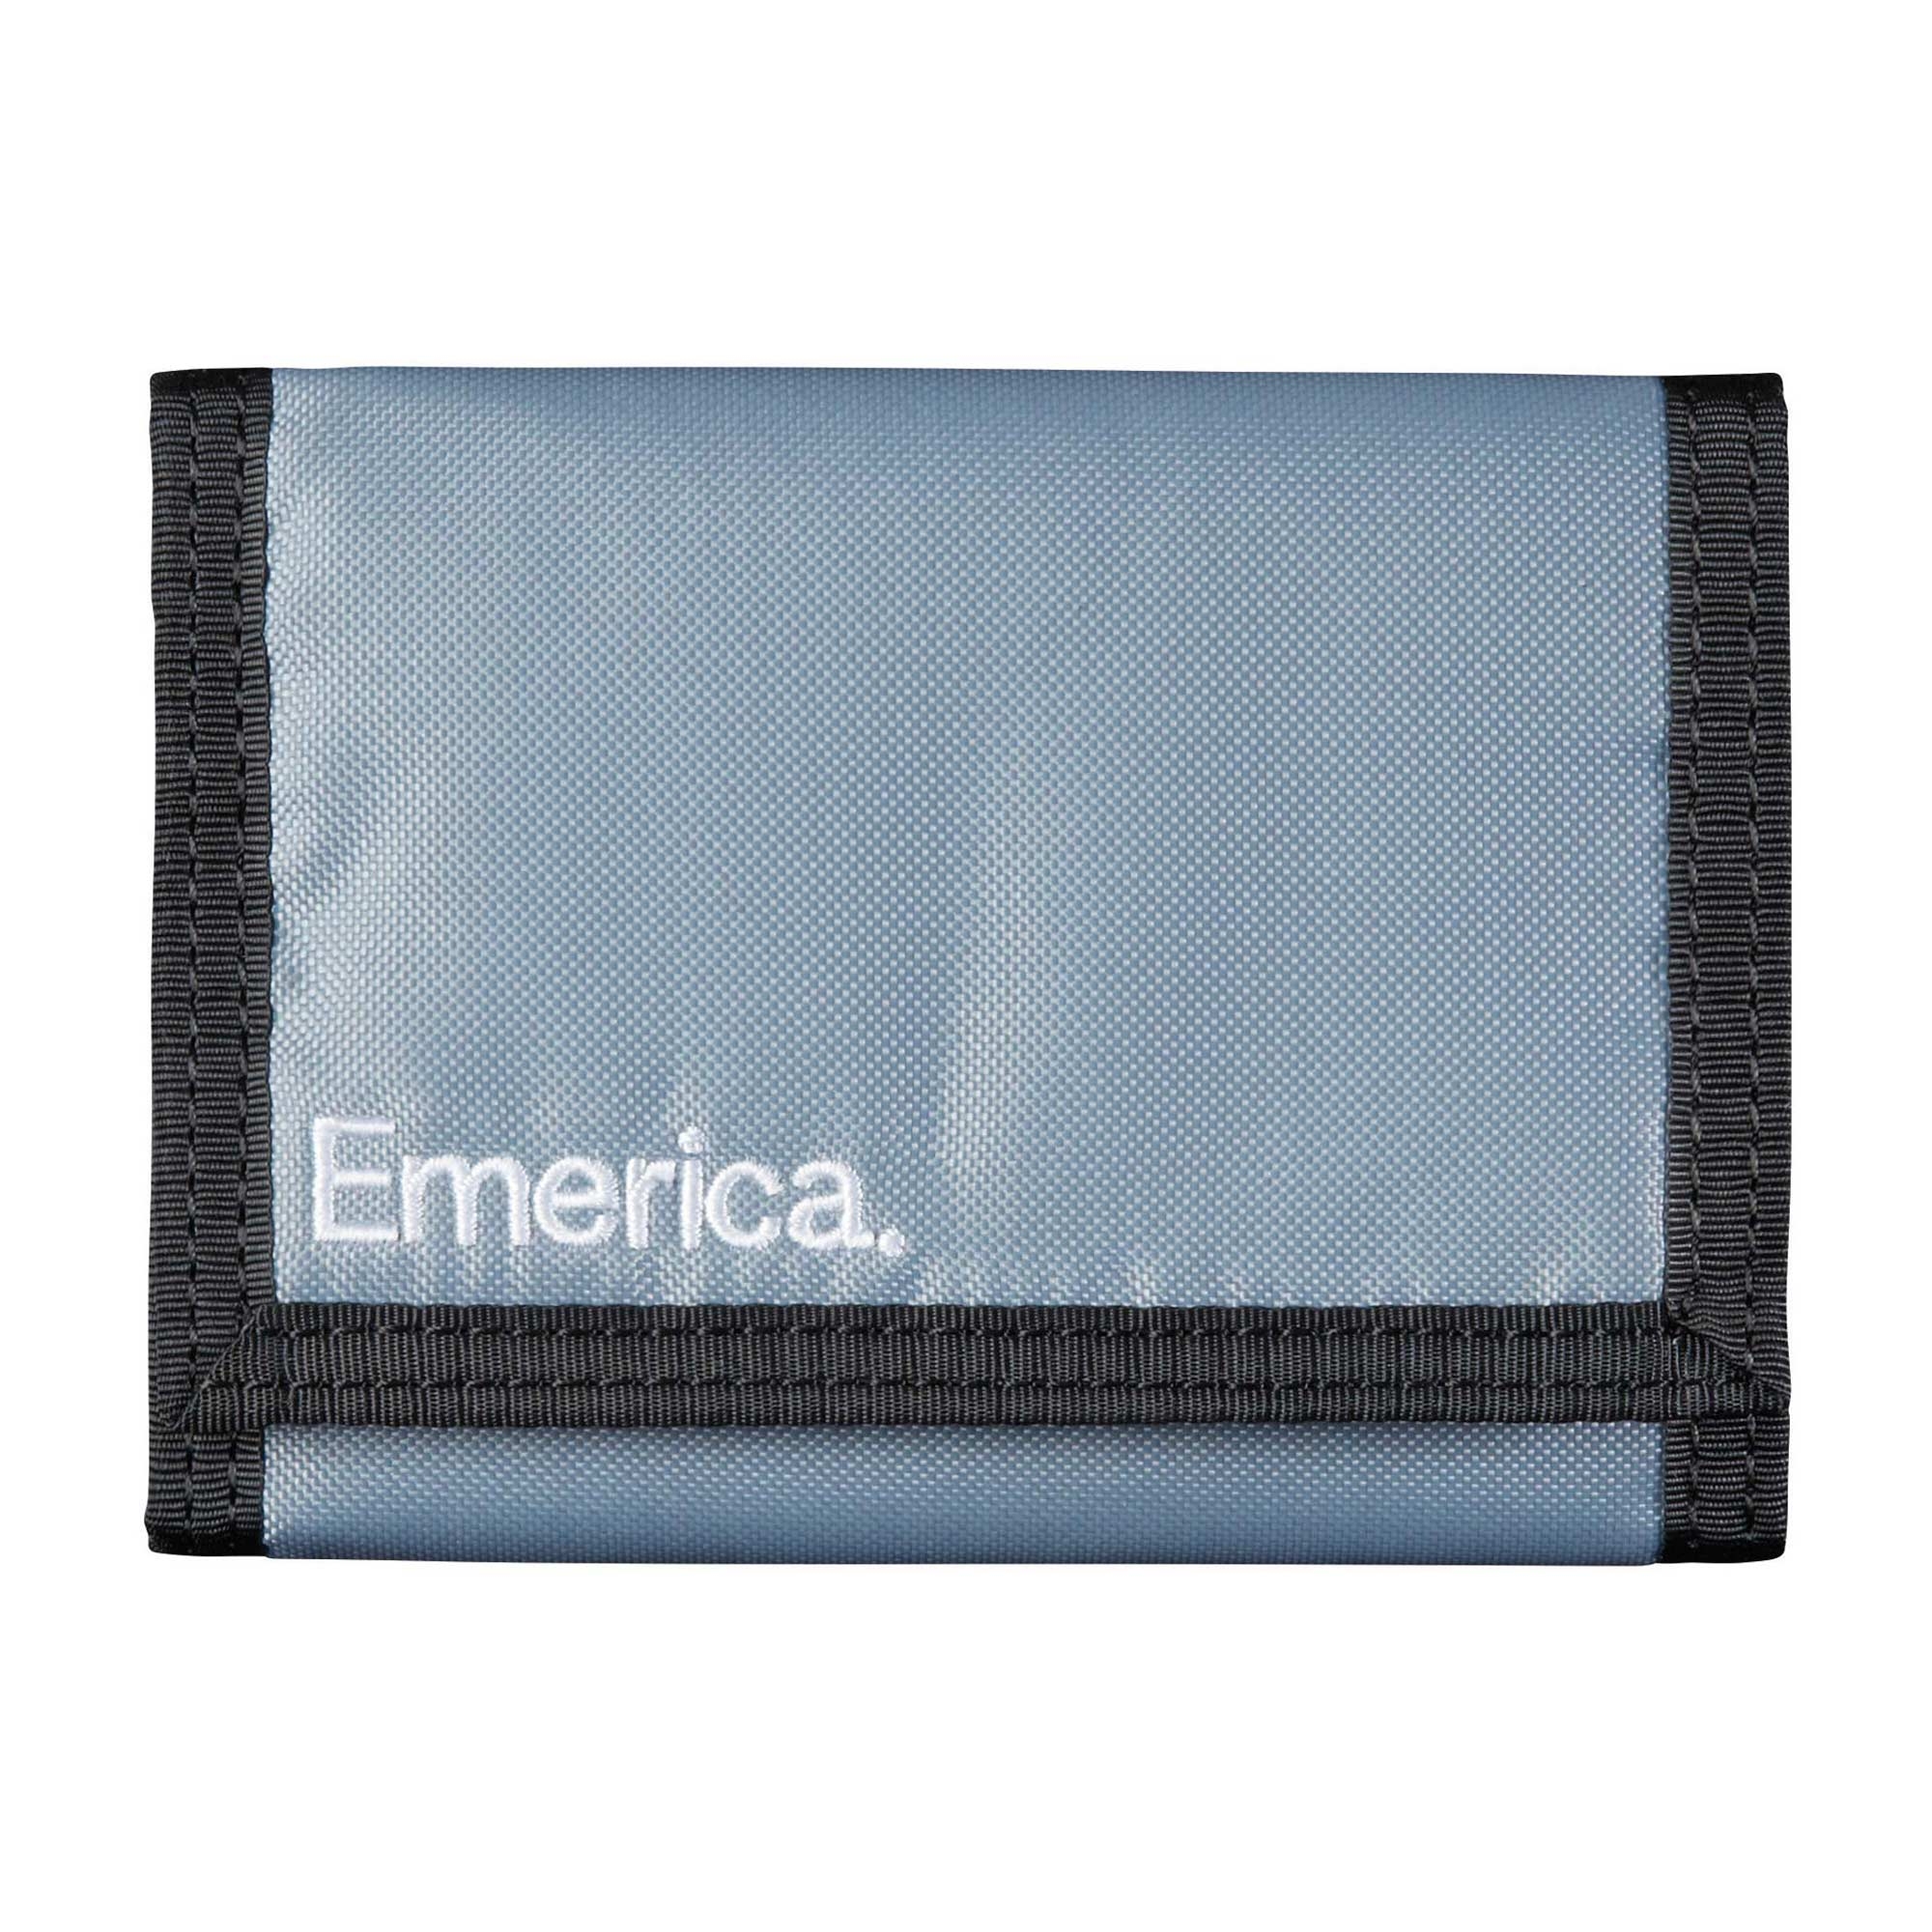 EMERICA Wallet PURE EURO, grey/black